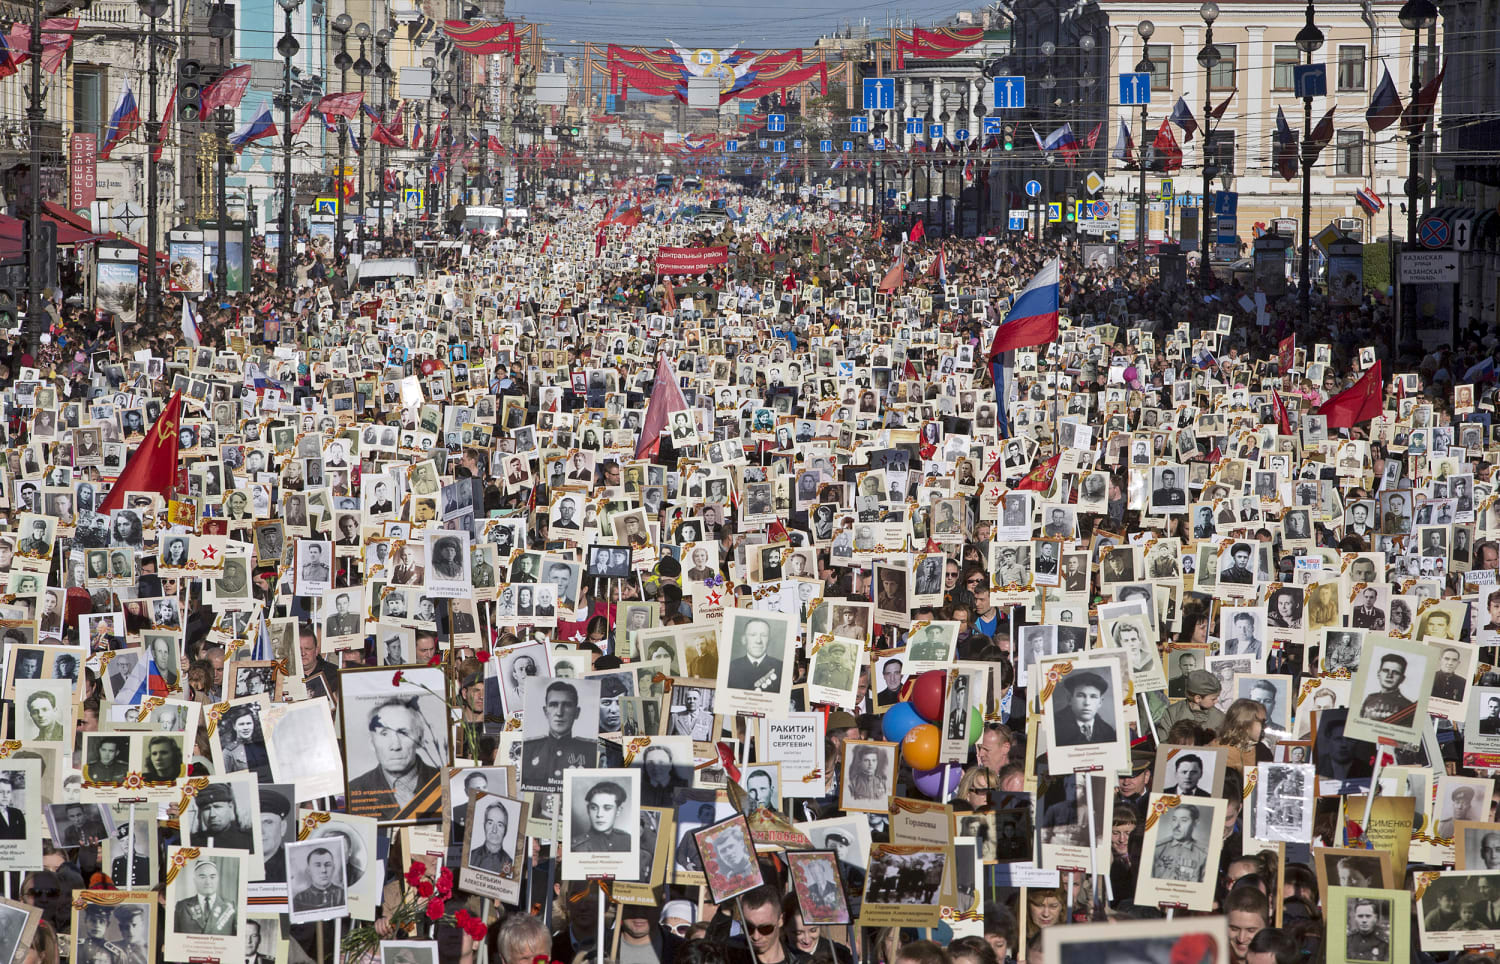 Î‘Ï€Î¿Ï„Î­Î»ÎµÏƒÎ¼Î± ÎµÎ¹ÎºÏŒÎ½Î±Ï‚ Î³Î¹Î± parade in Moscow 'immortals'